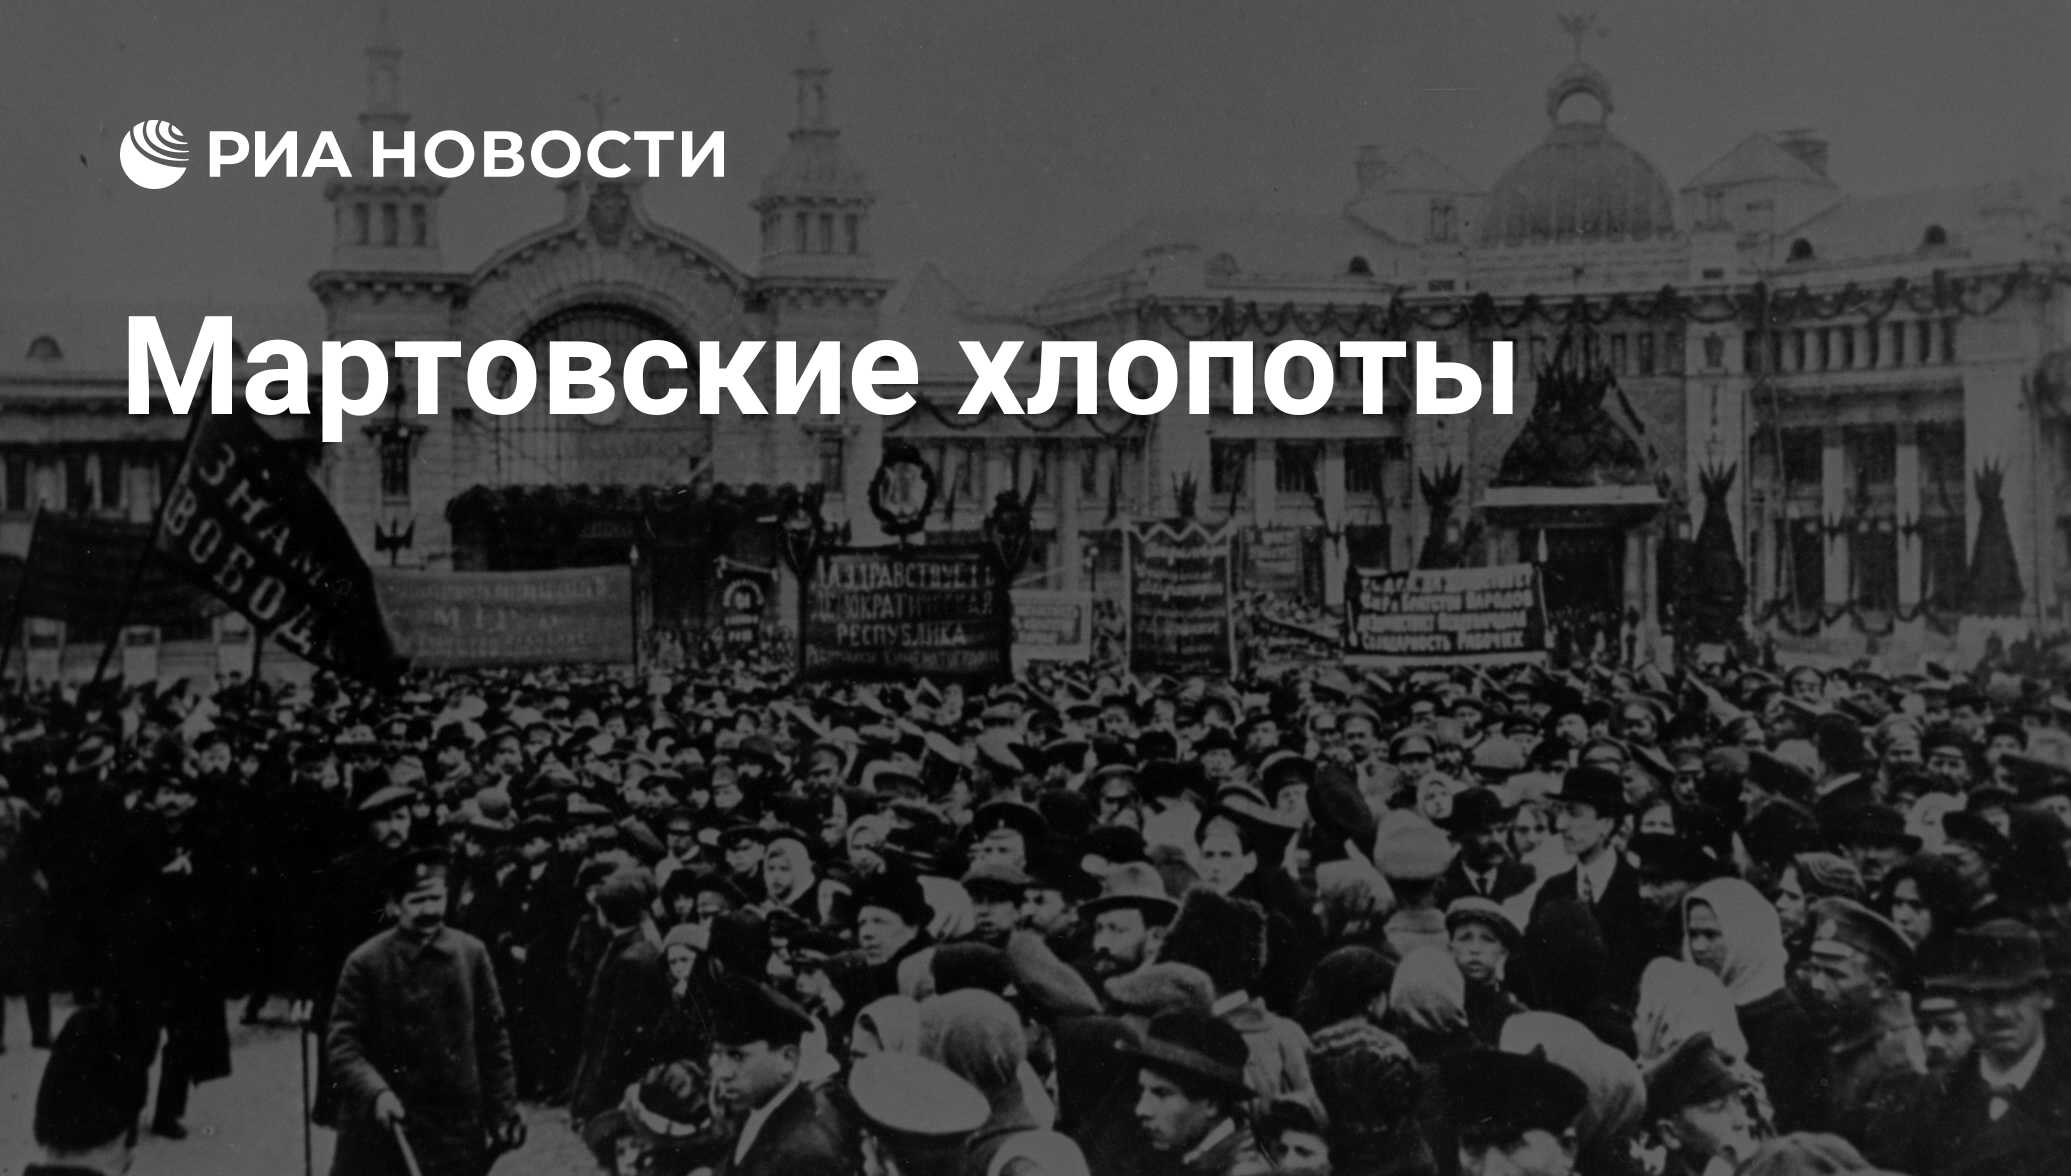 Правительство россии после октября 1917 года называлось. Революция 1917 года в России. Февральская революция 1917 года. Революция 1917 года в России февраль. Революция 1905 года Петроград.